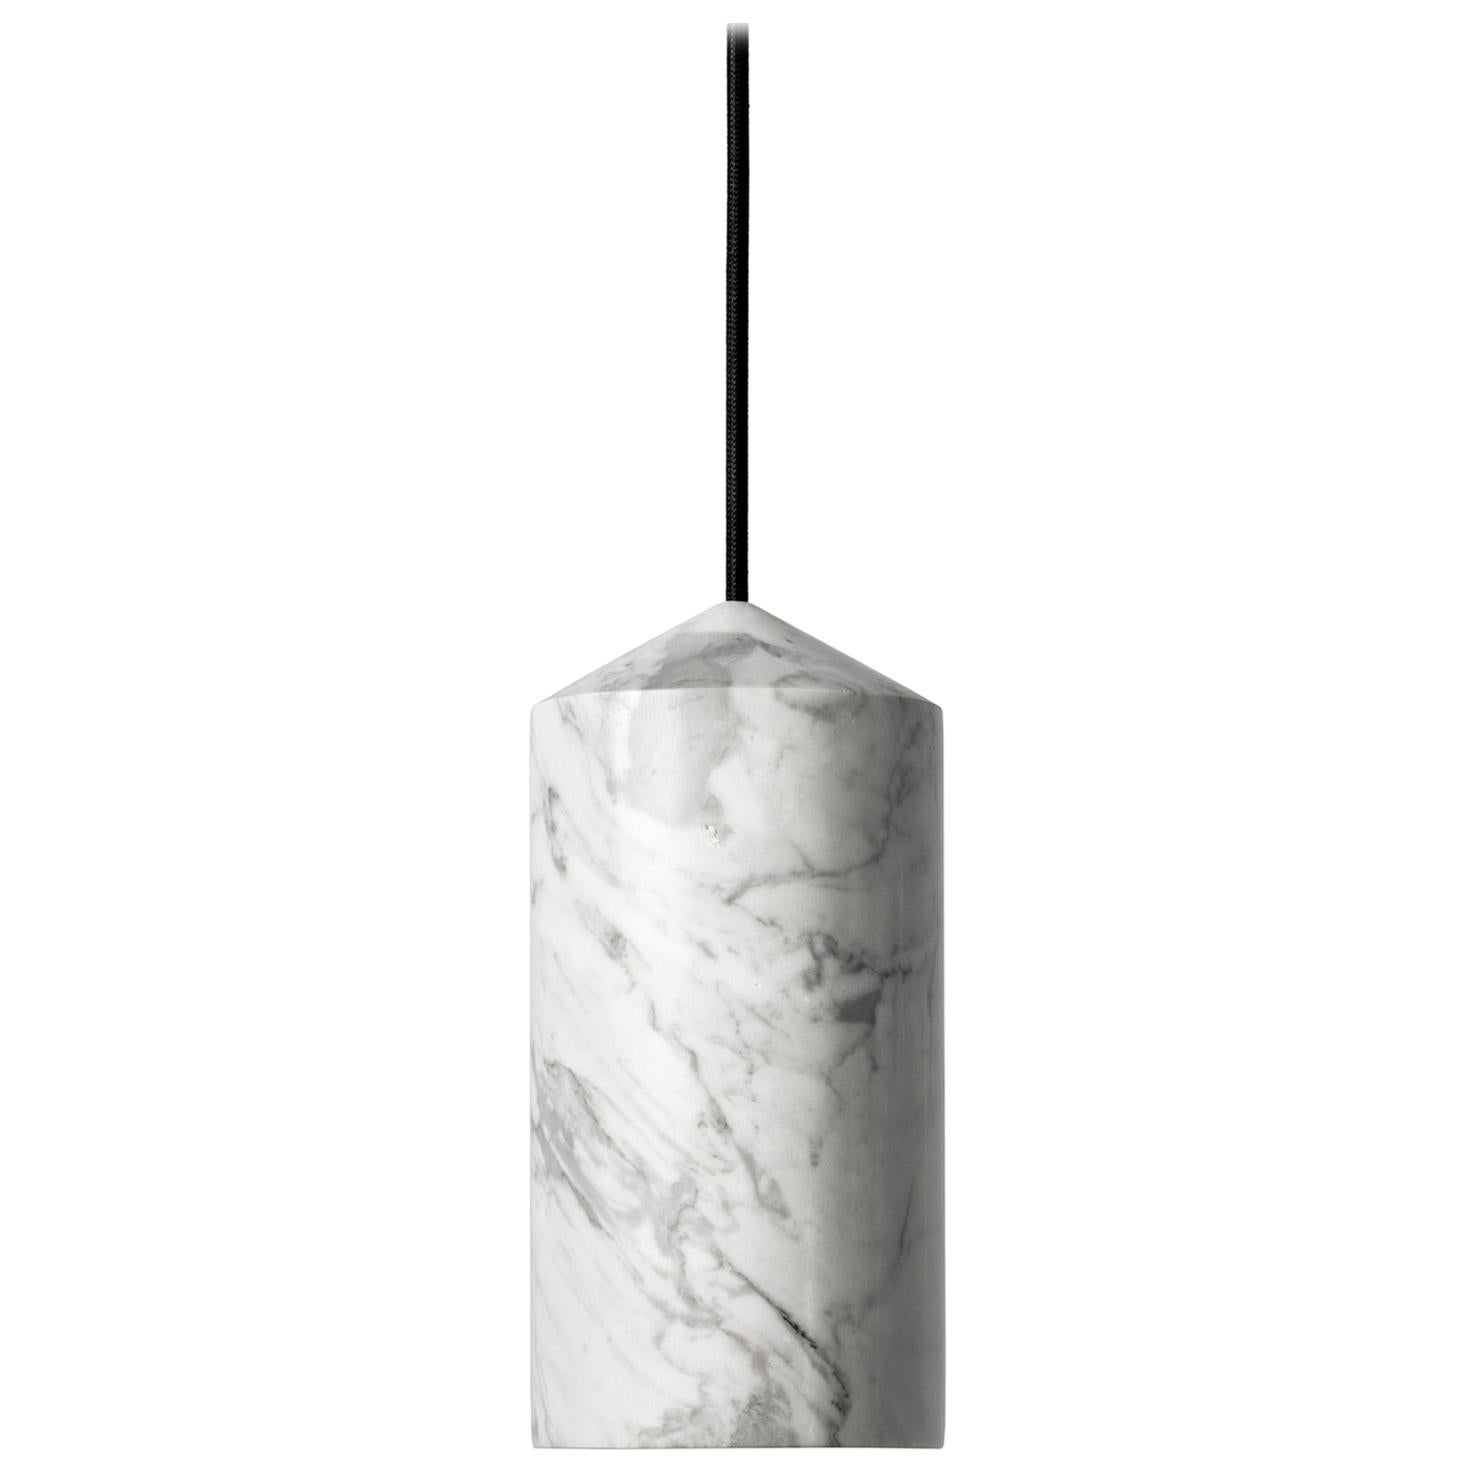 Venato Carrara and Aluminum Pendant Light, “in, ” by Buzao